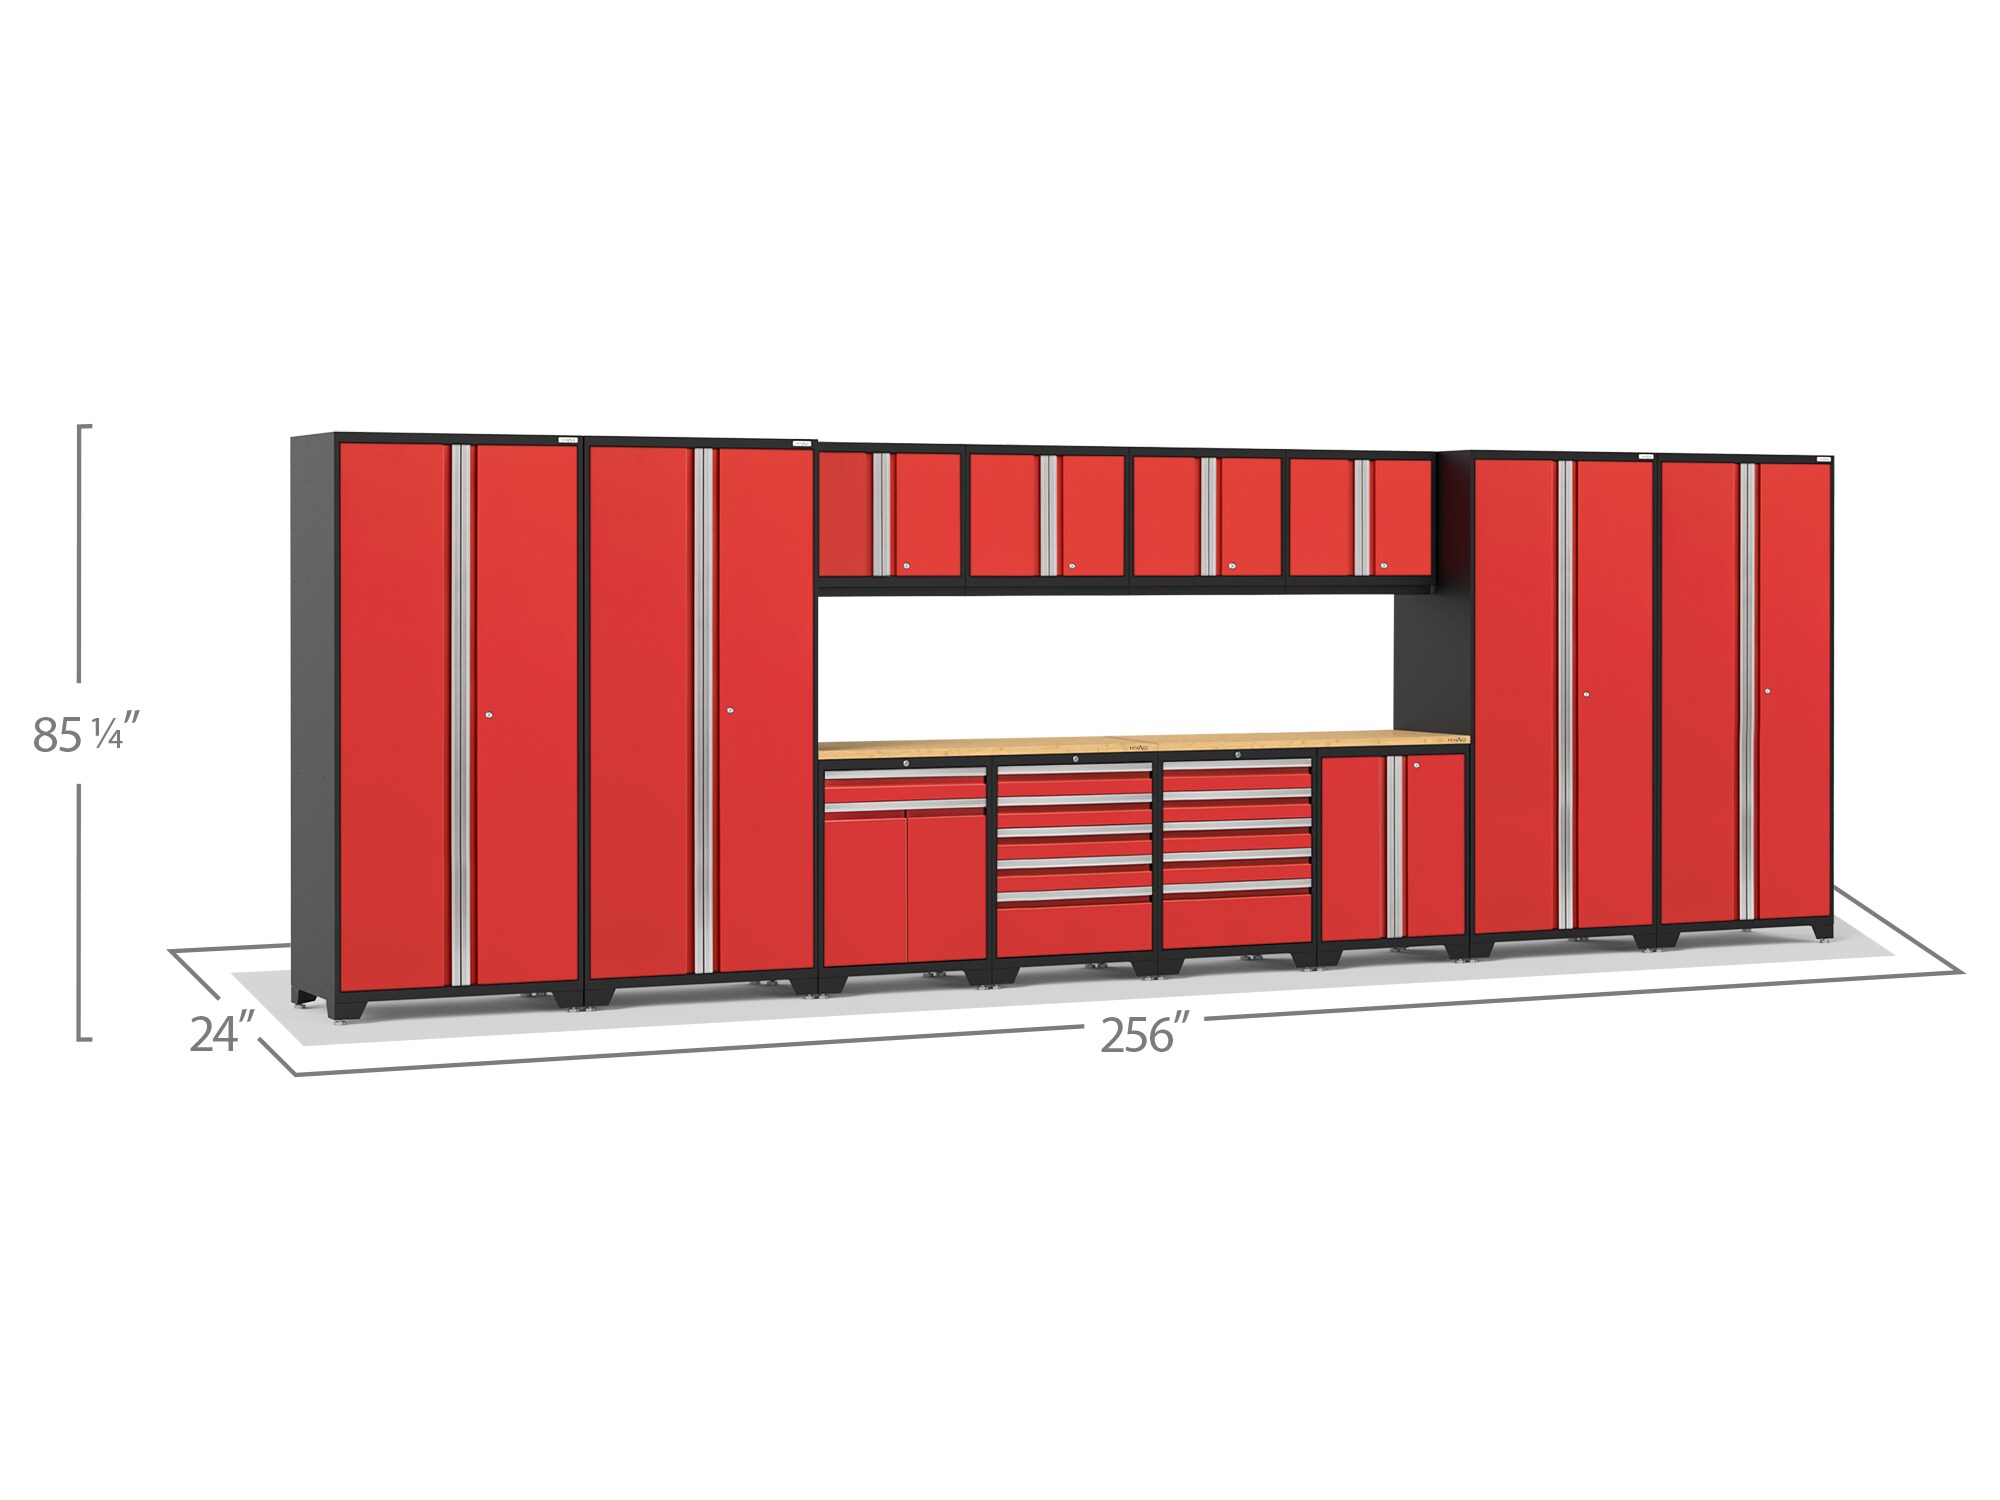 8-Piece Pro Duty Welded Steel Garage Storage System in Black Line-X Coating (184 in. W x 81 in. H x 24 in. D)